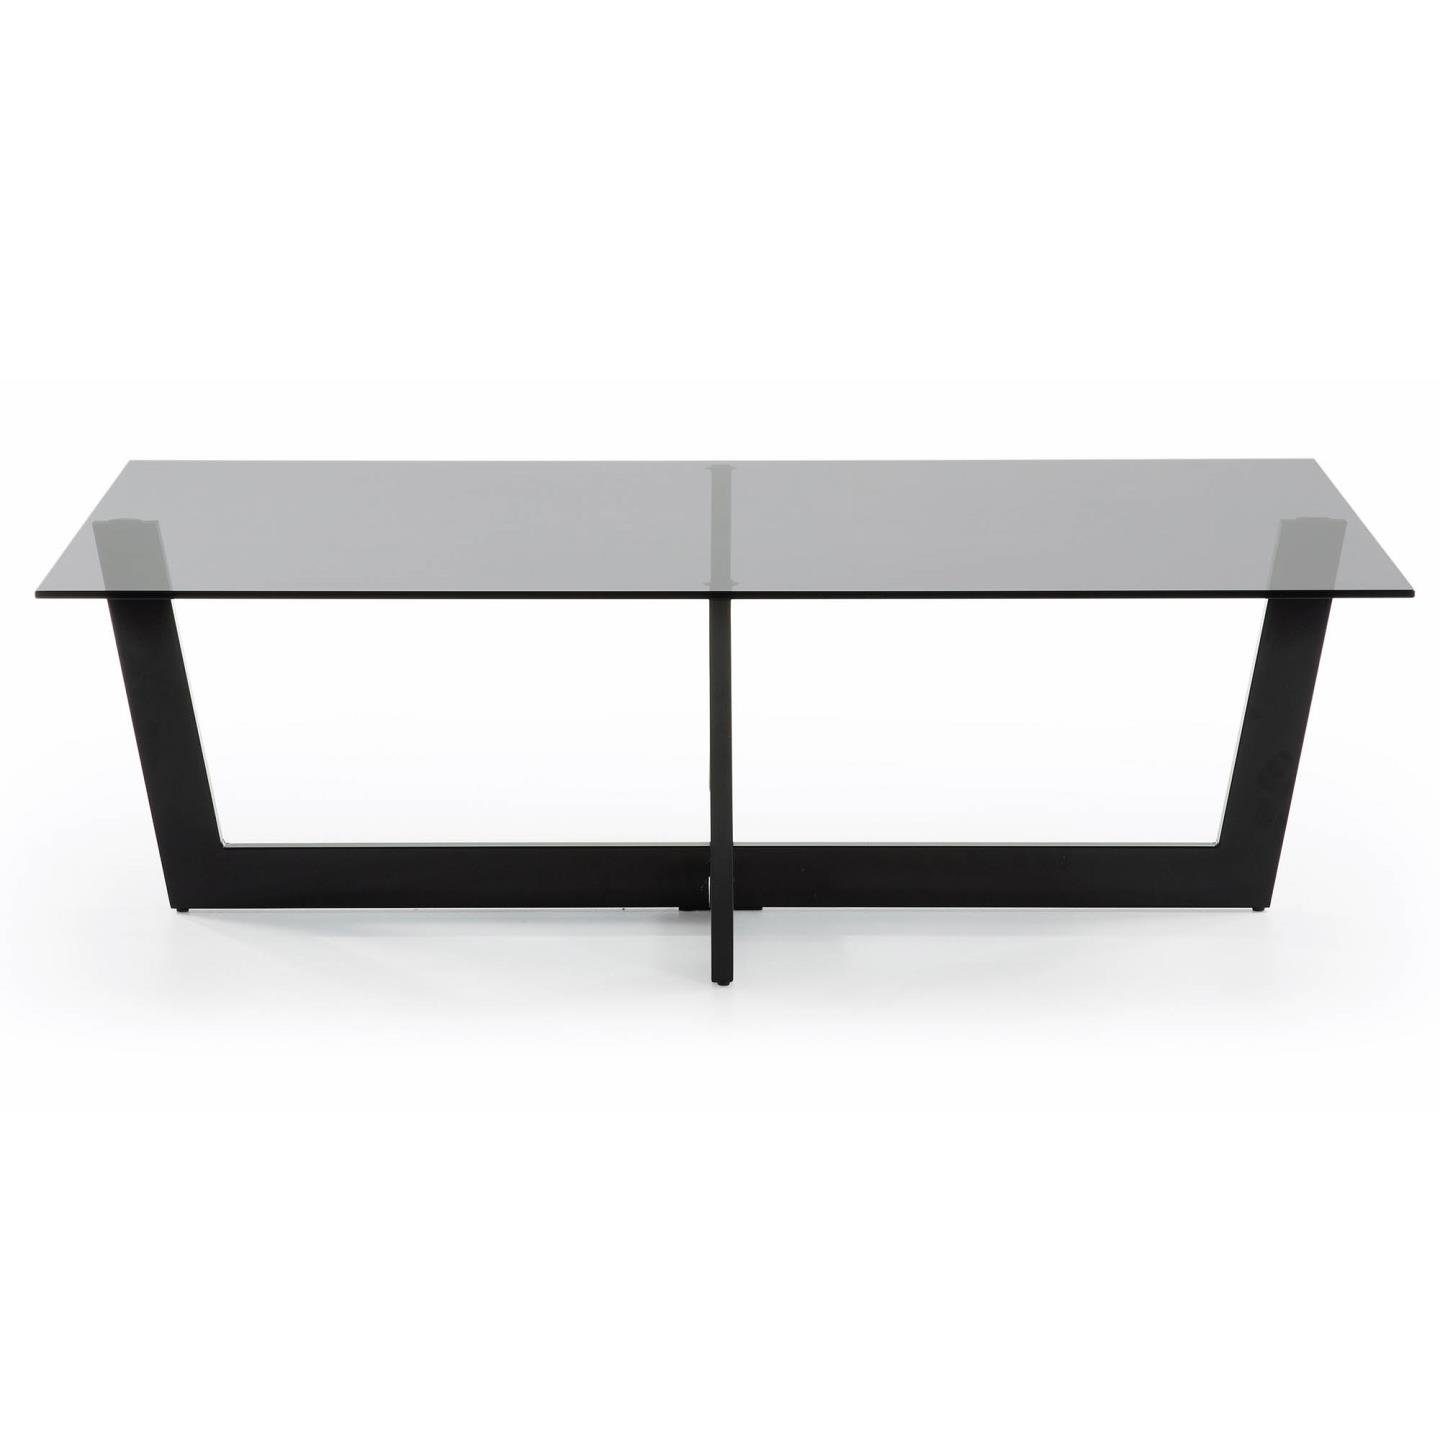 Plam Glas Couchtisch Stahlstruktur Tisch schwarz Natur24 Beistelltisch 120x70cm